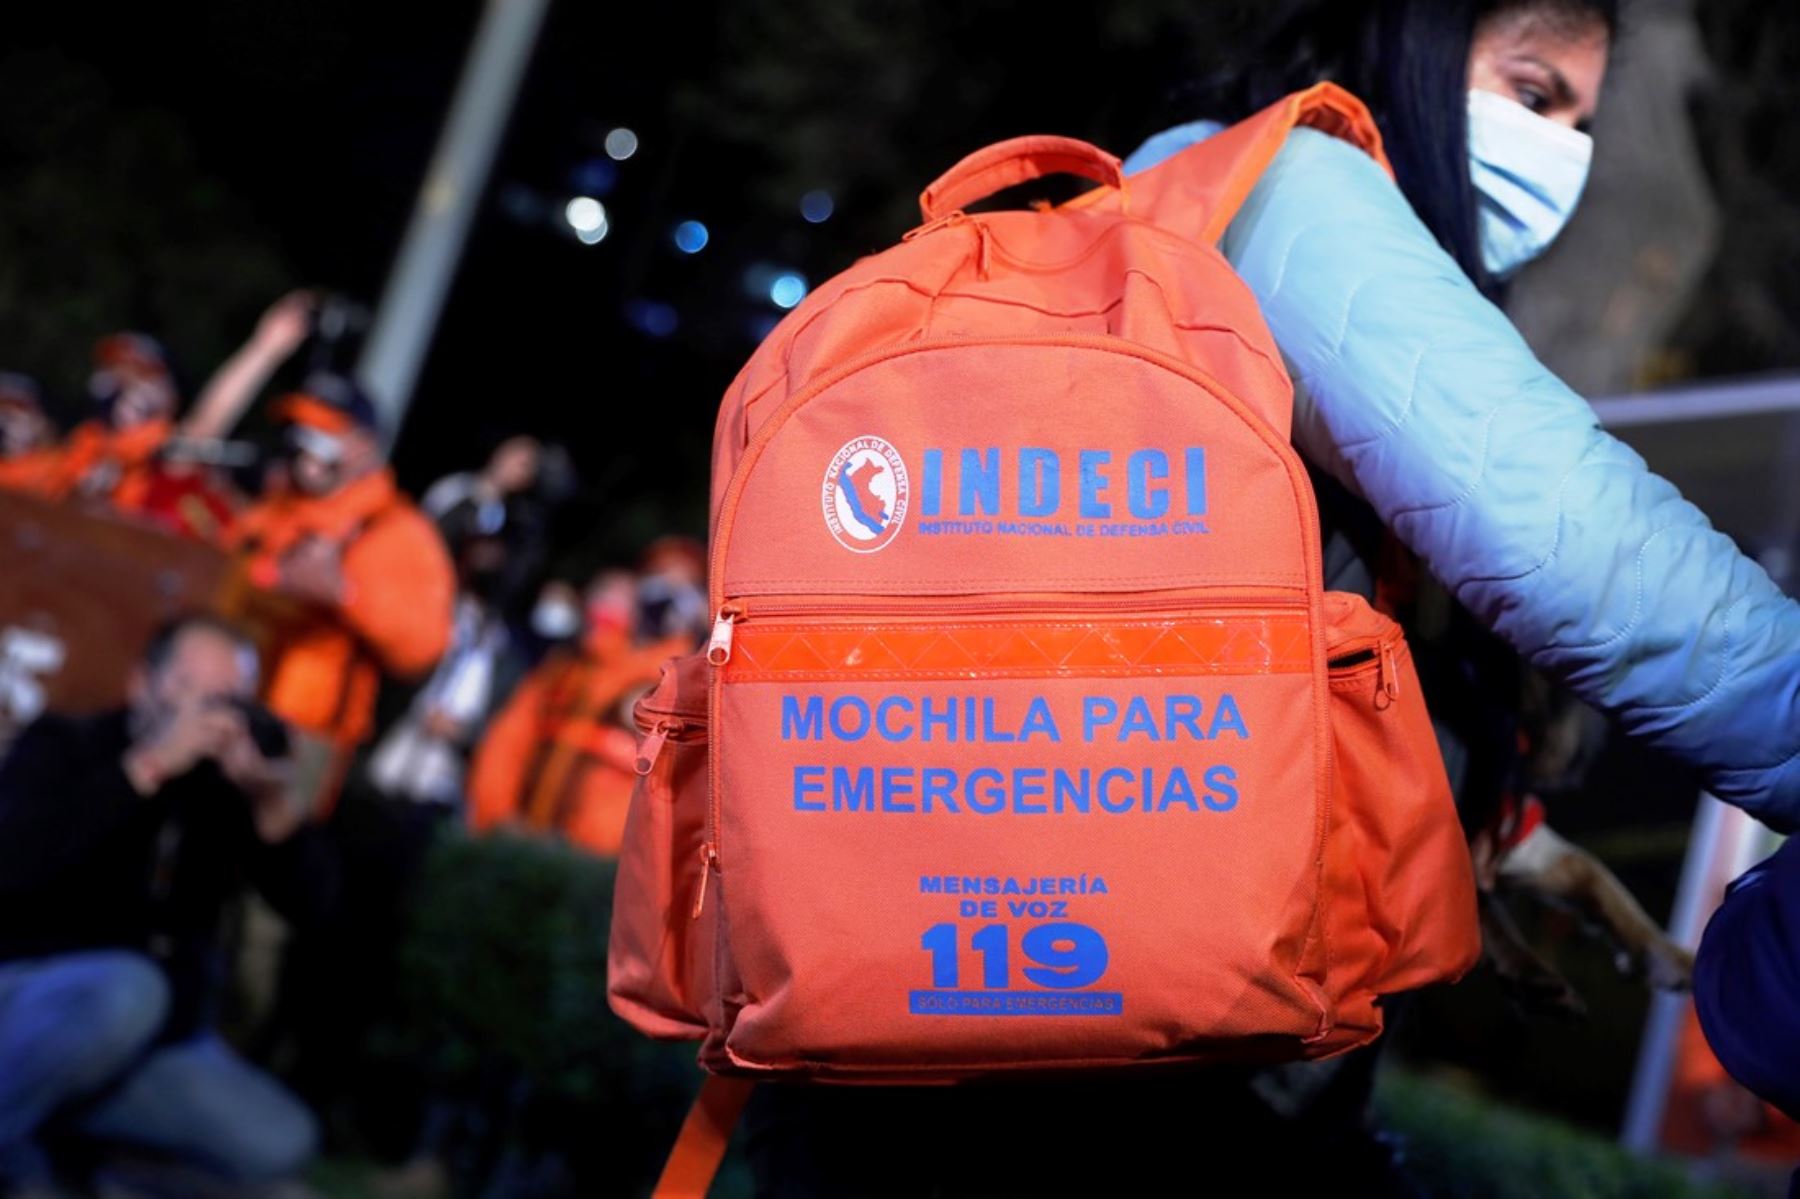 Al tener preparada la mochila de emergencia podrían ganarse minutos valiosos que salvarían vidas. Foto: ANDINA/ Renato Pajuelo.